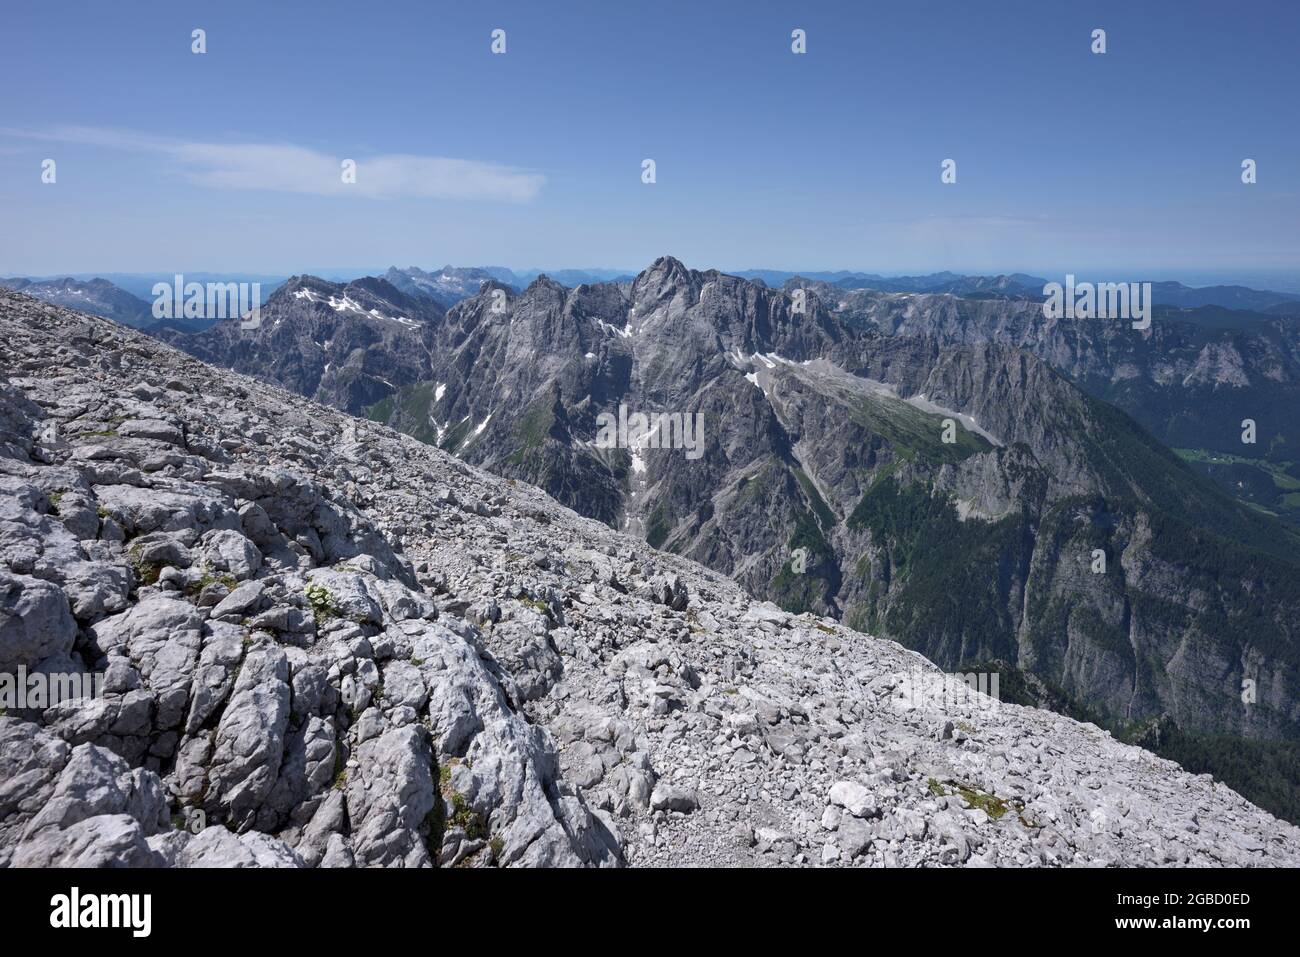 Bergpanorama aus felsigem Gelände auf dem Weg zum Gipfel des Watzmann Hocheck, Ramsau, Berchtesgaden, Bayern, Deutschland Stockfoto